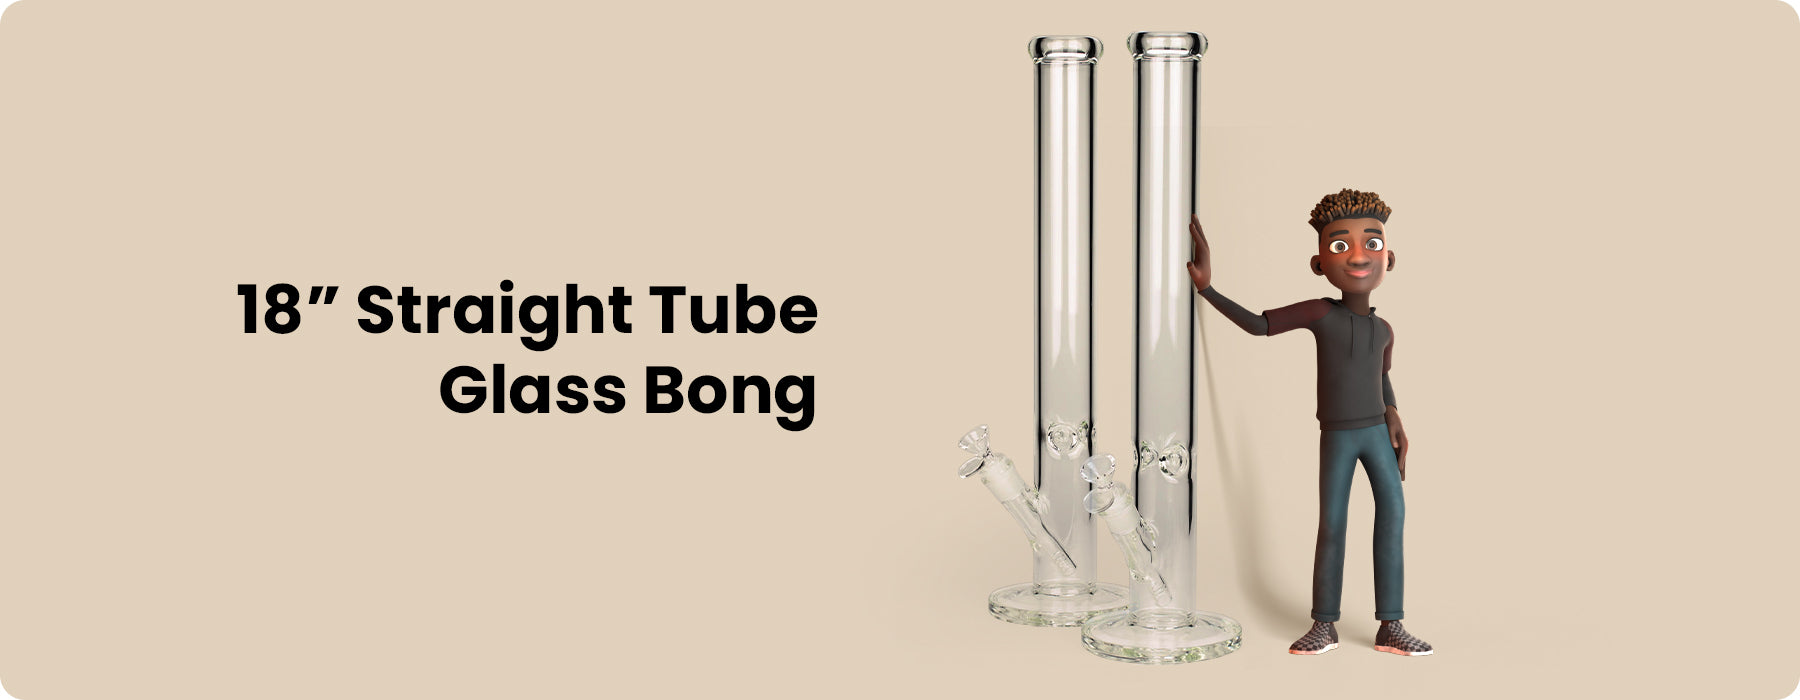 18" straight tube glass bong main banner